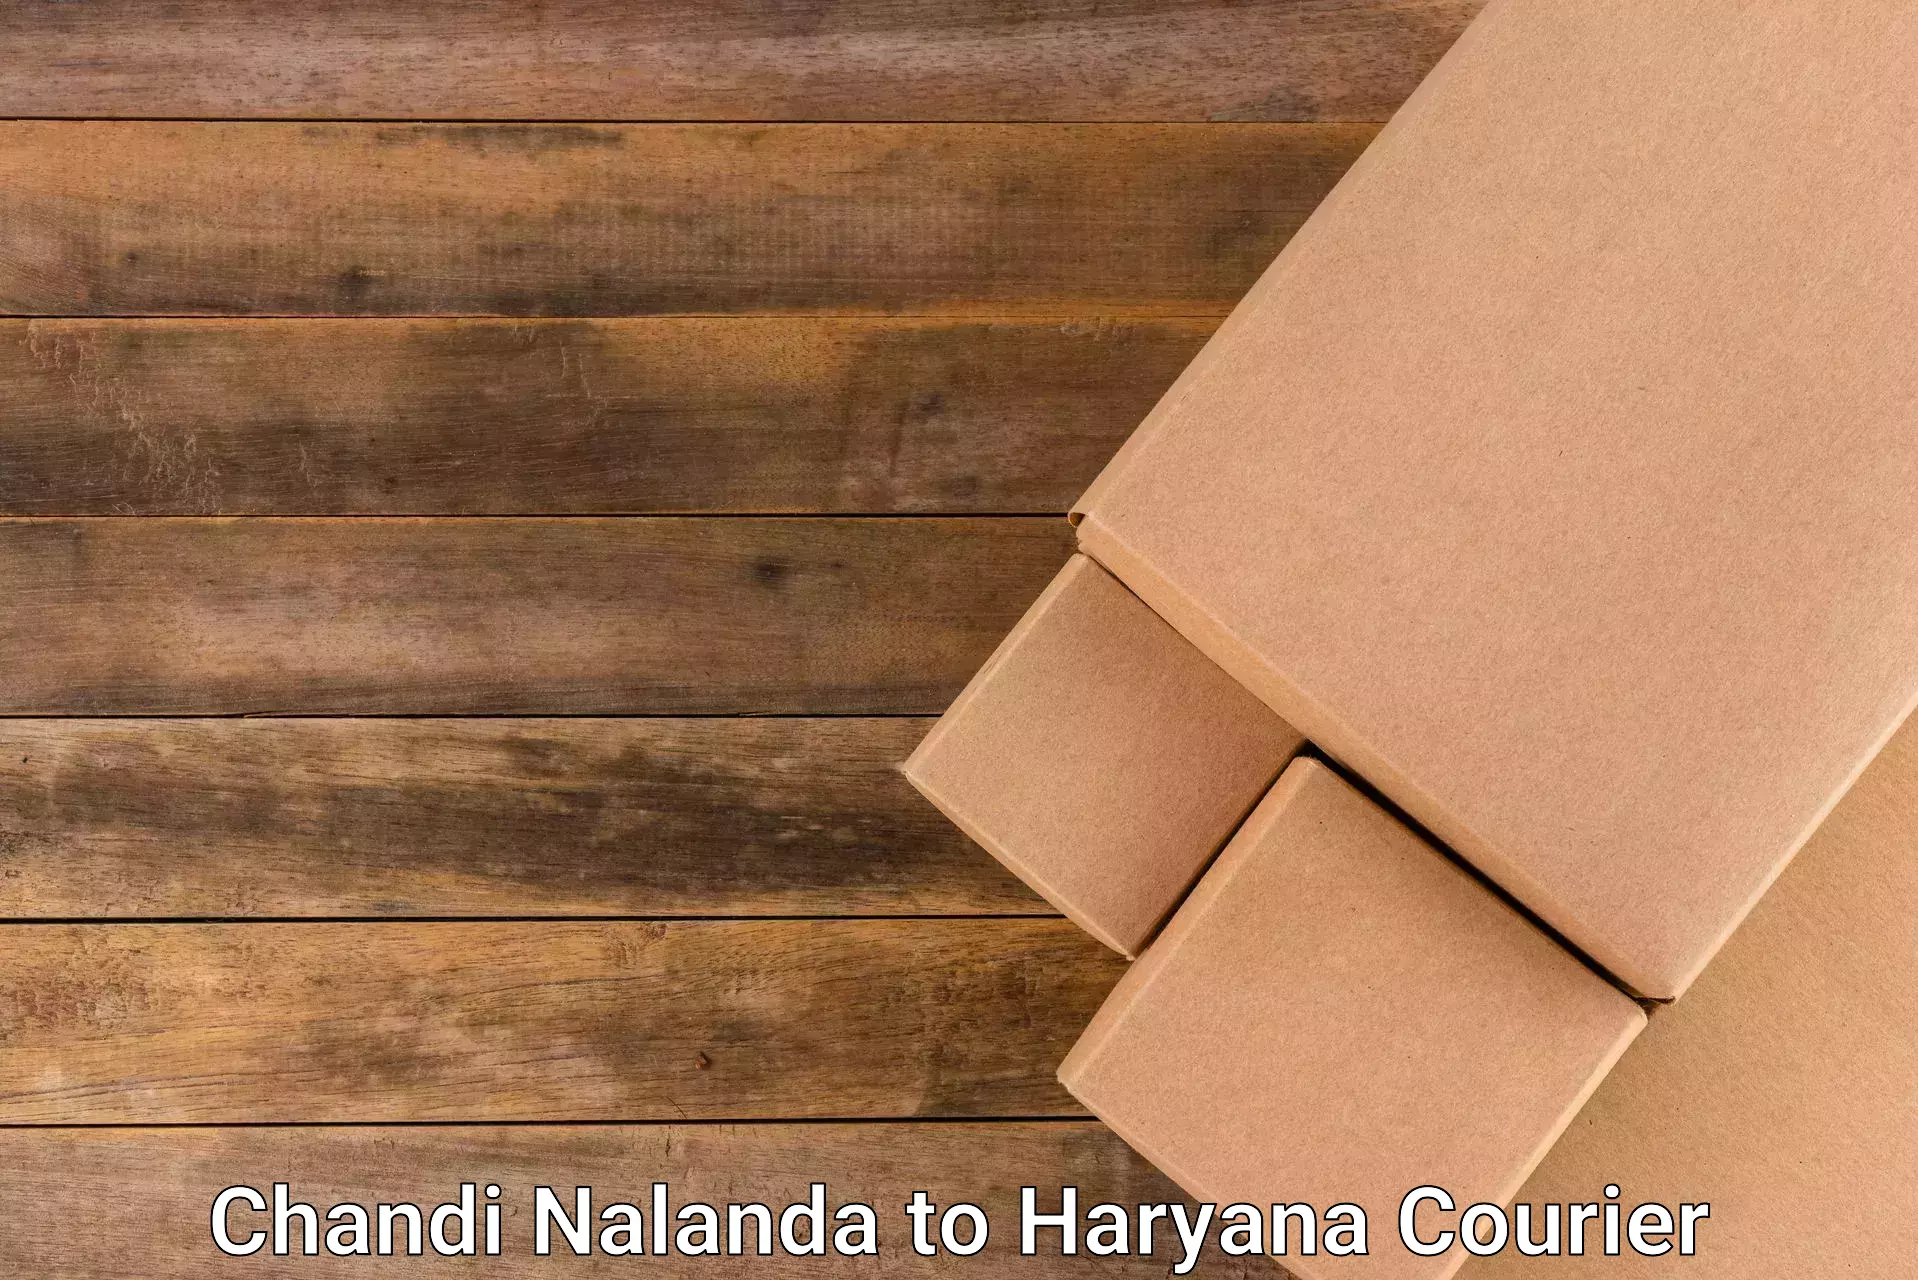 Affordable parcel service Chandi Nalanda to Chaudhary Charan Singh Haryana Agricultural University Hisar